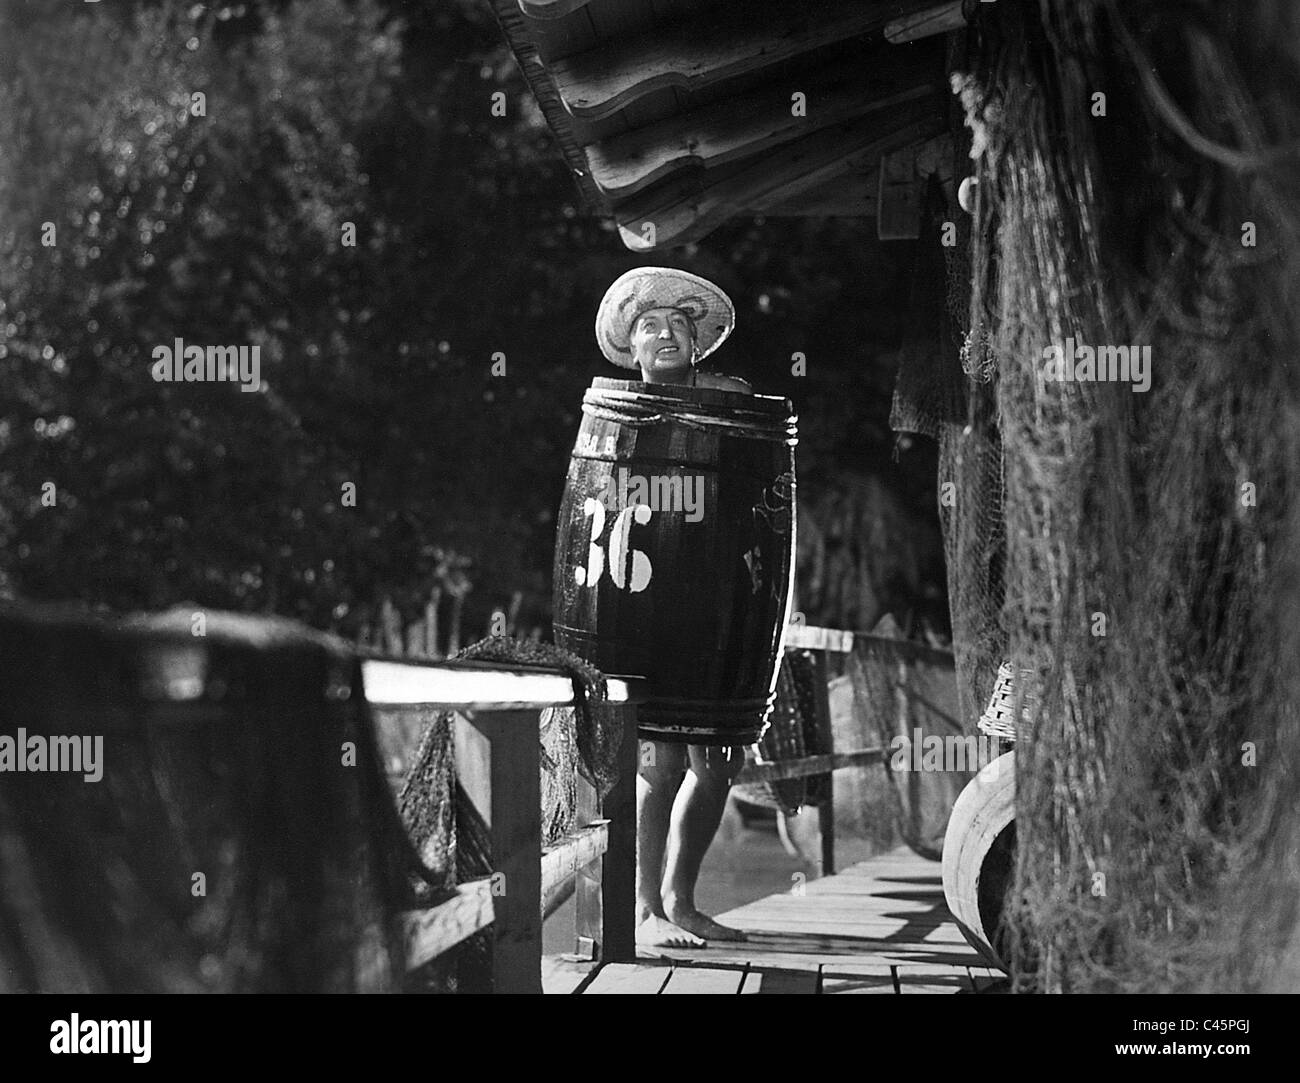 Hans Albers in 'Ein Mann auf Abwegen', 1940 Stock Photo